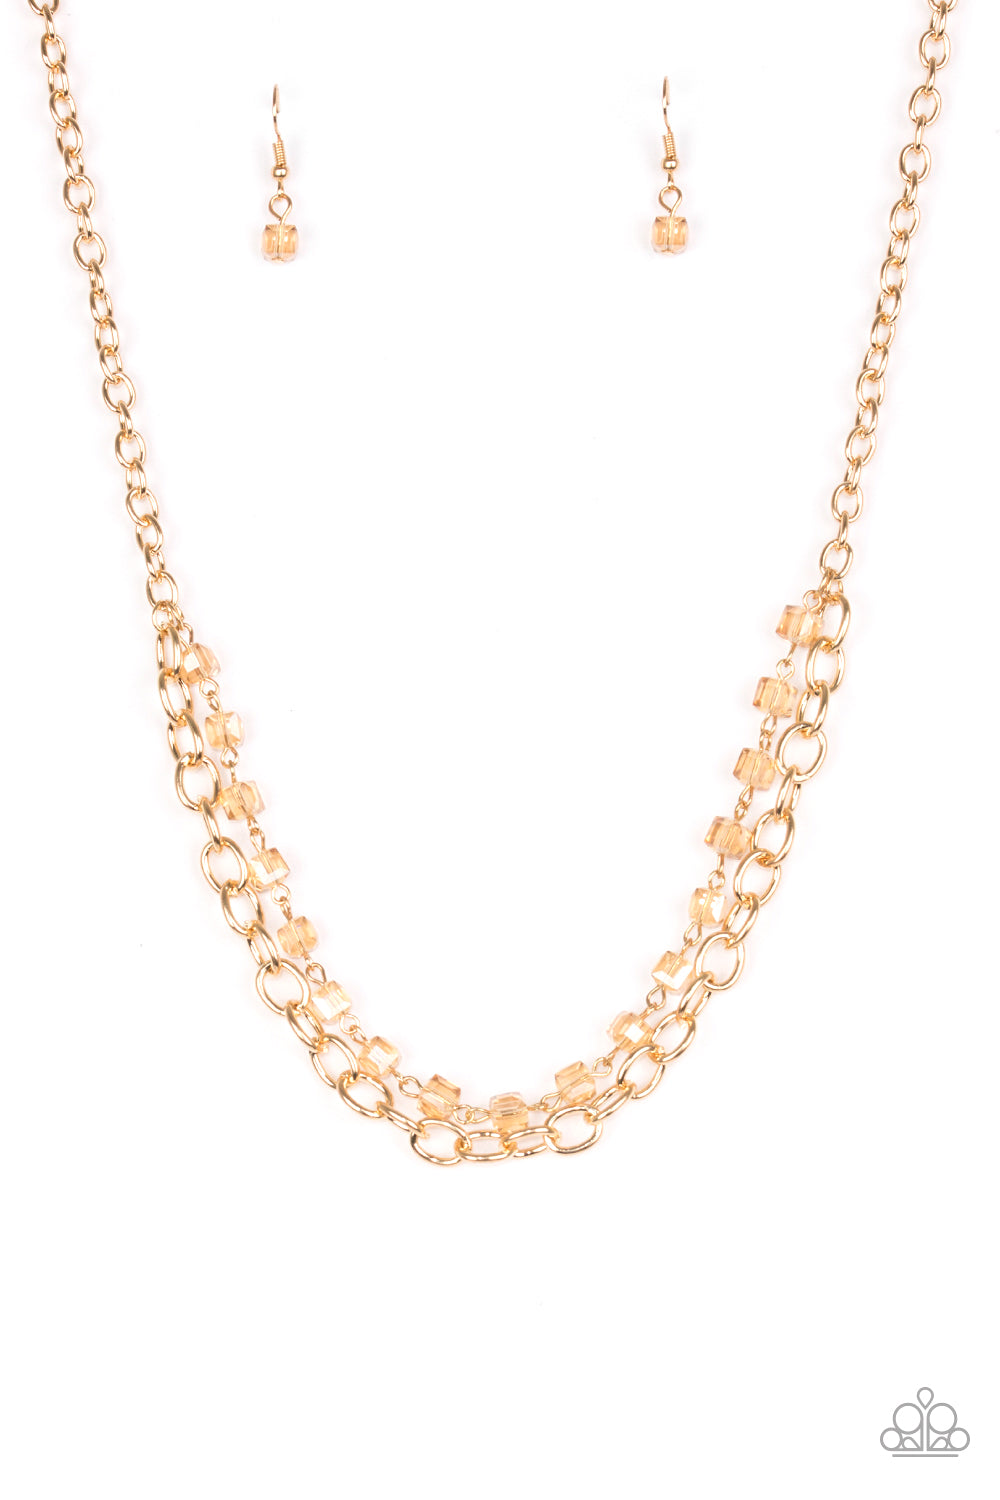 Block Party Princess - Gold necklace plus matching bracelet 1556